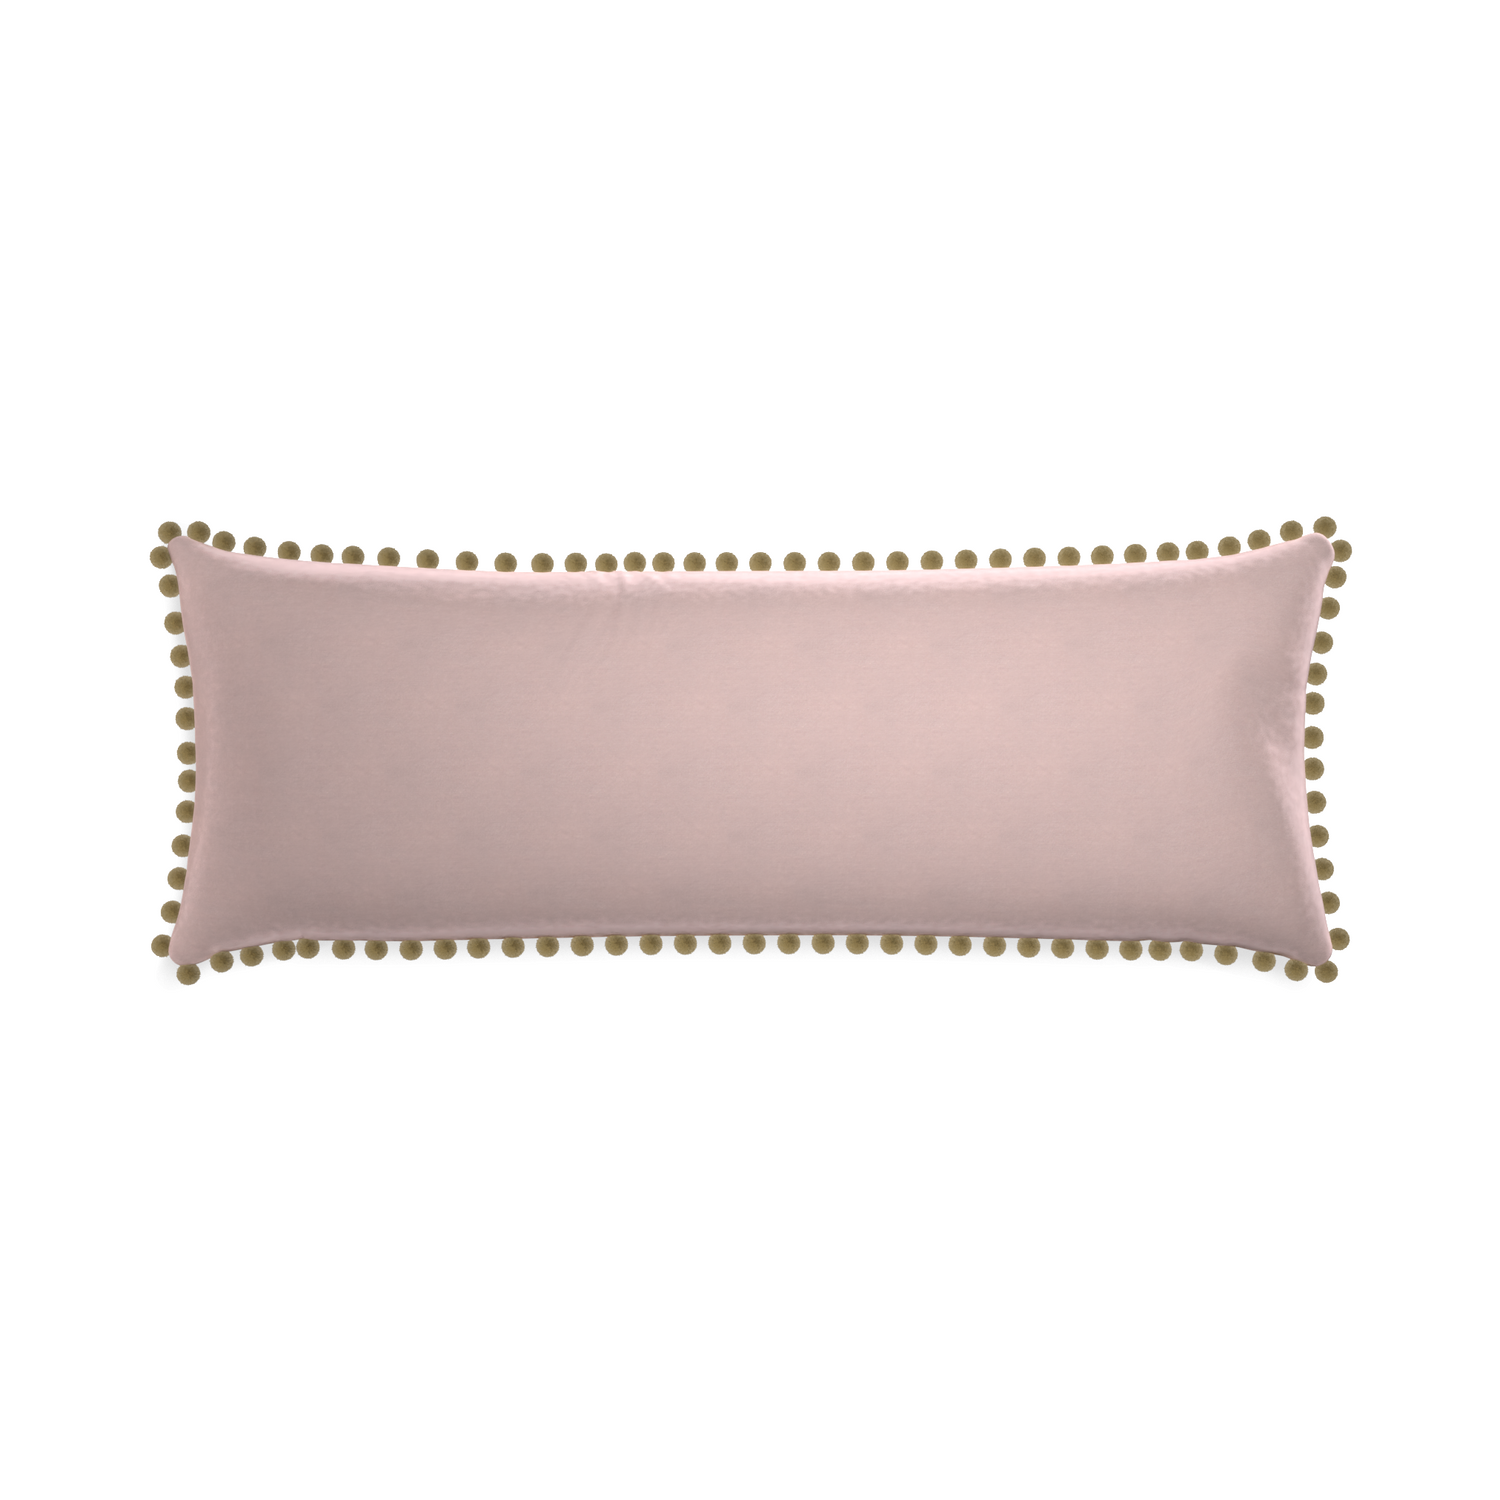 Xl-lumbar rose velvet custom pillow with olive pom pom on white background